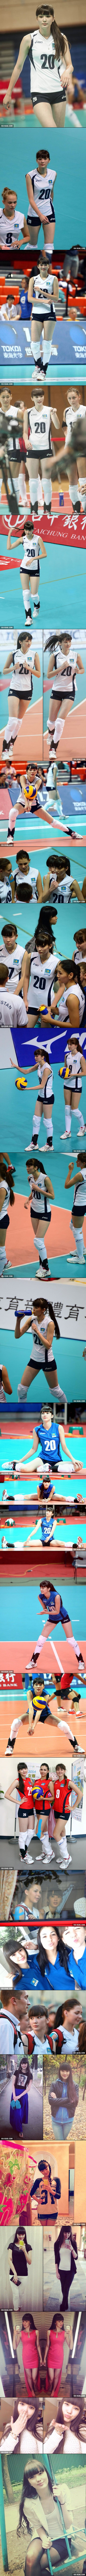 atlet cantik &quot;Sabina Altynbekova&quot; asal kazakhstan gan.. BENING